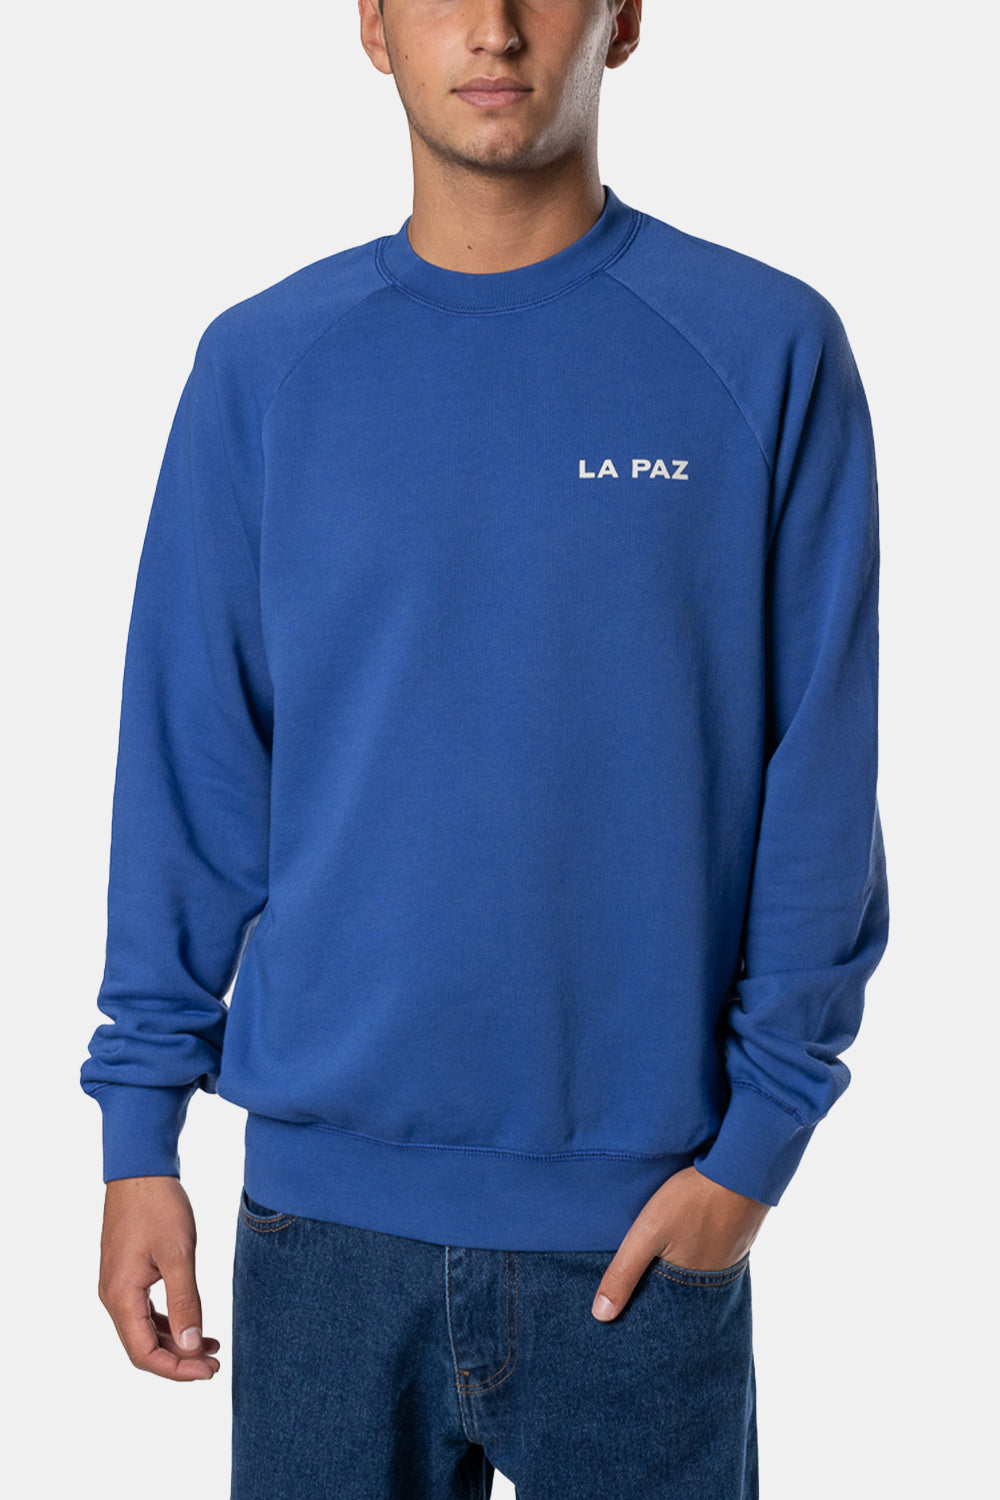 La Paz Cunha Sweatshirt (Palm Blue)